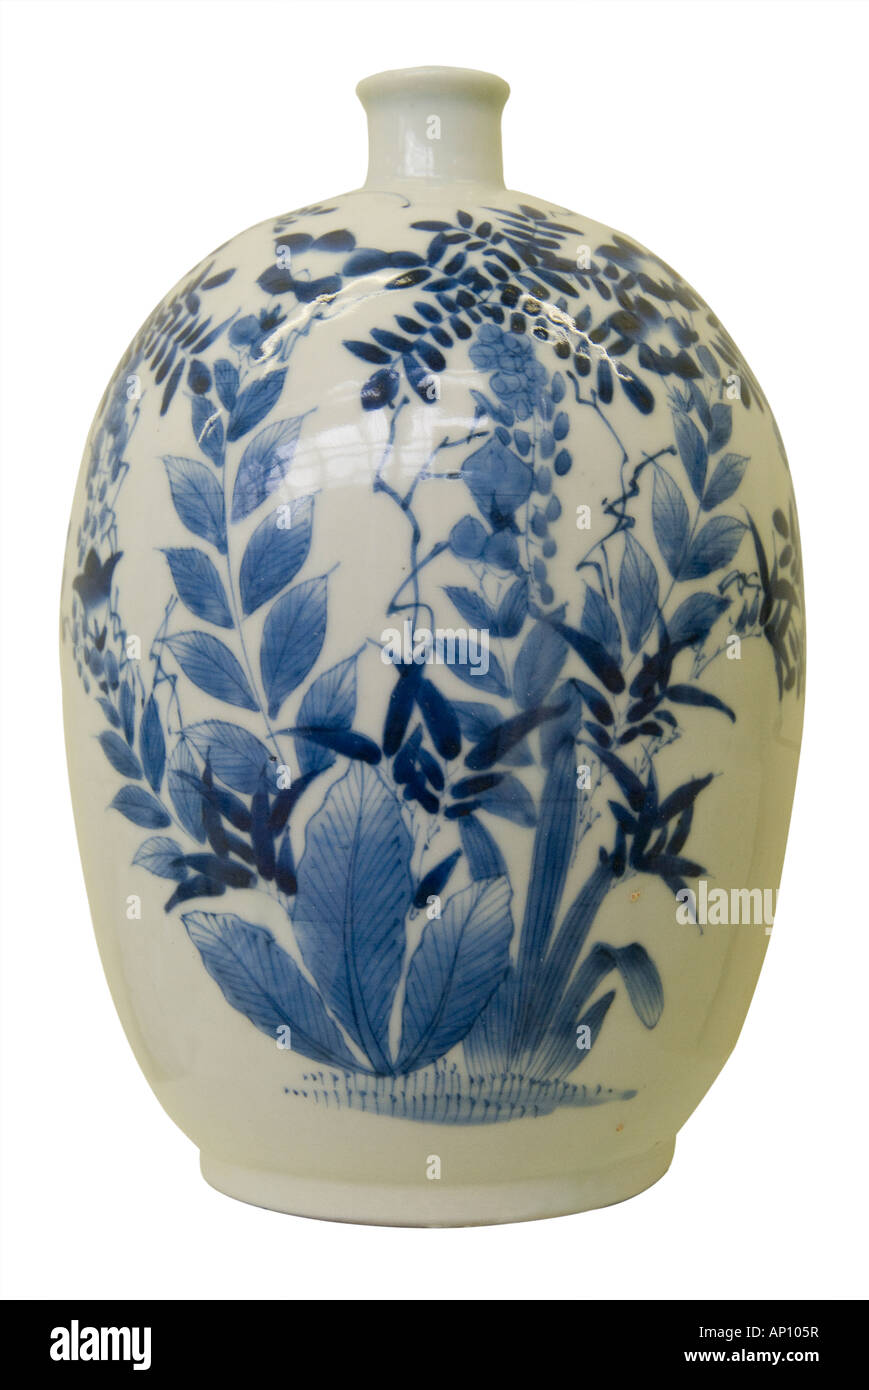 Edo Periode 1600 1868 Vase blau Blumenmuster ostindischen Handelskompanie Japan exportieren Porzellan Familie Brennofen unter verglasten blau Ov emailliert Stockfoto